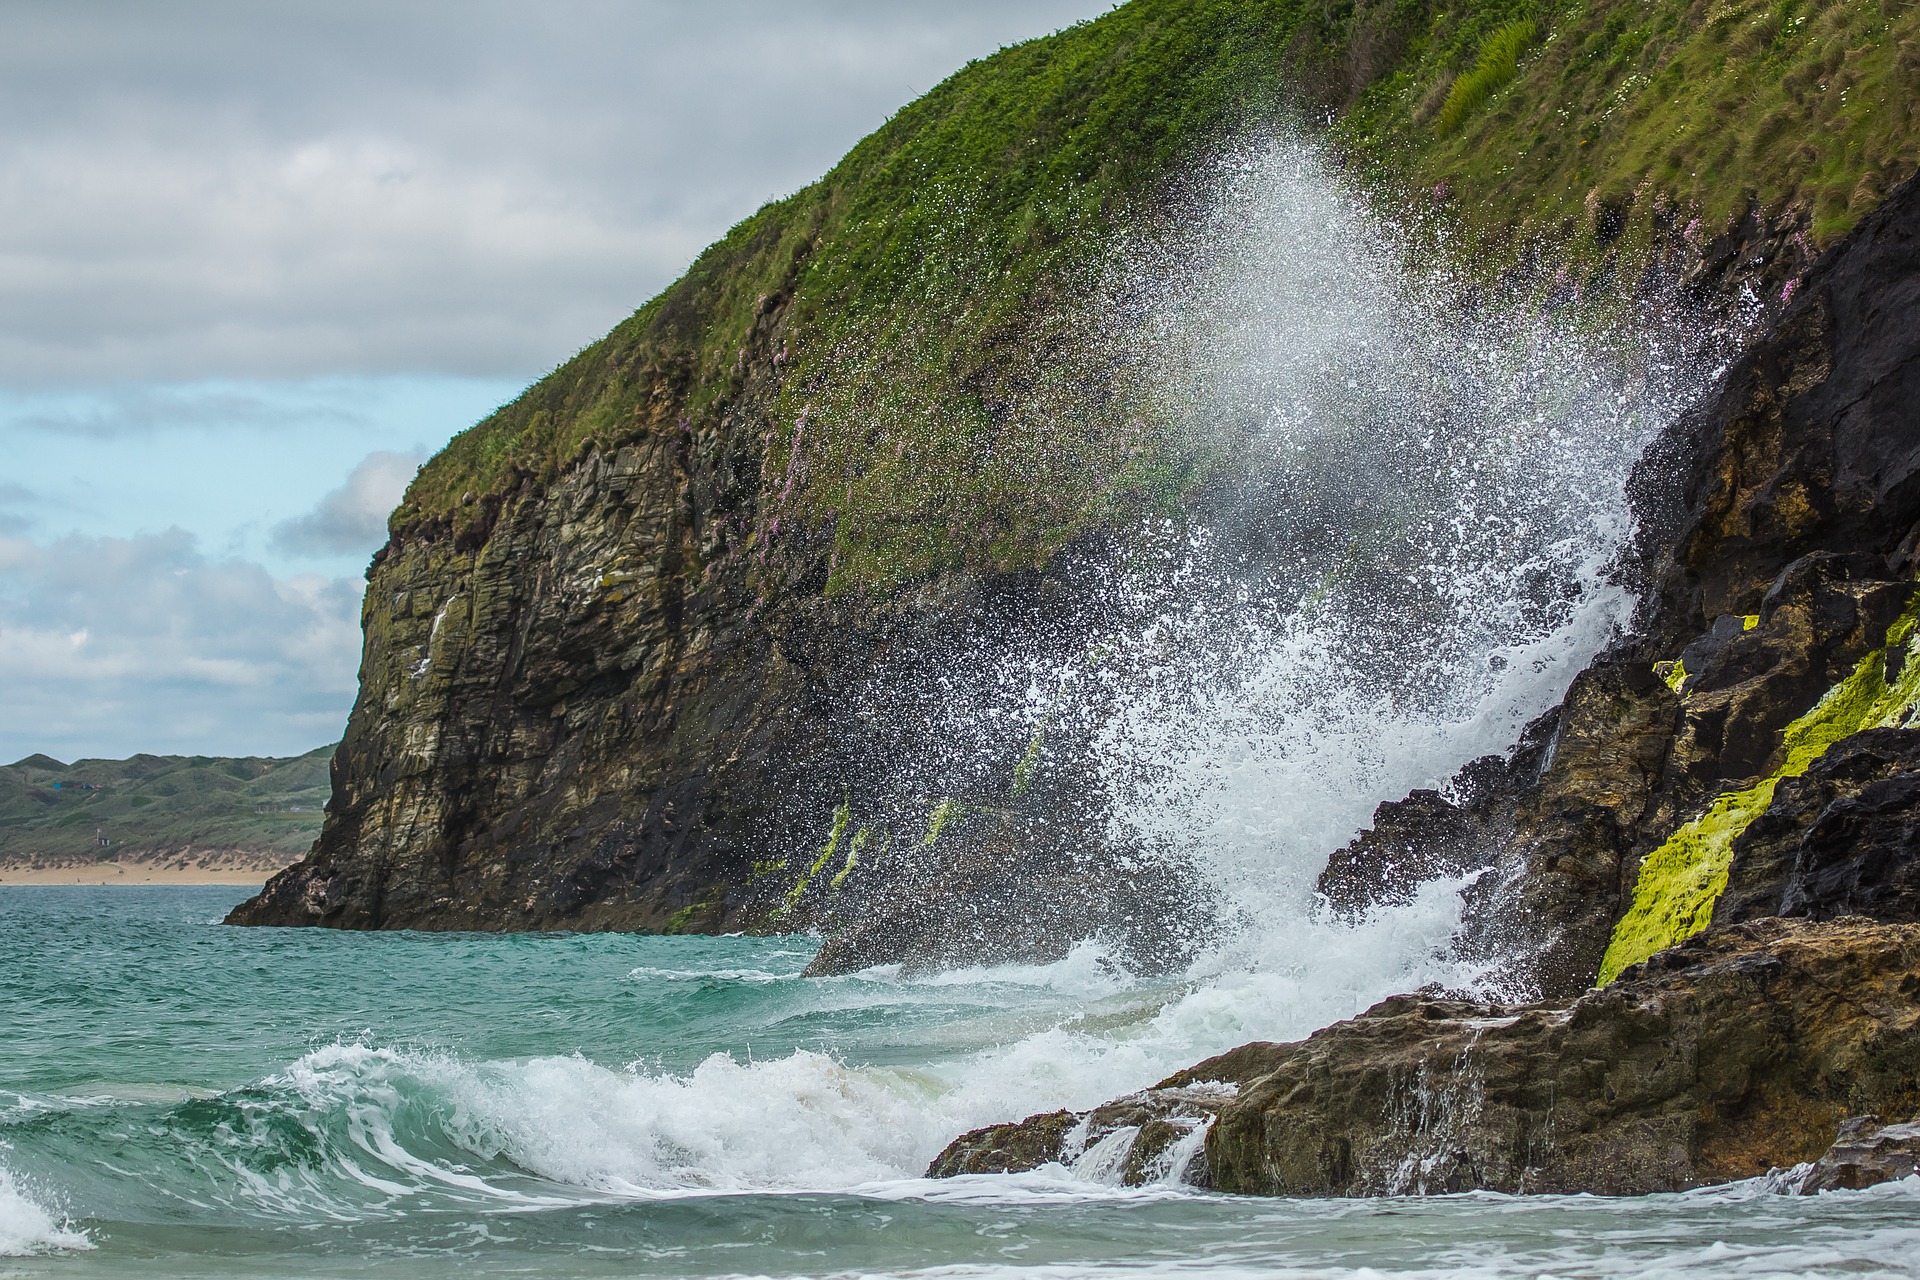 Klippe am Meer mit spritzender Welle in Cornwall (Bild von diego_torres auf Pixabay)